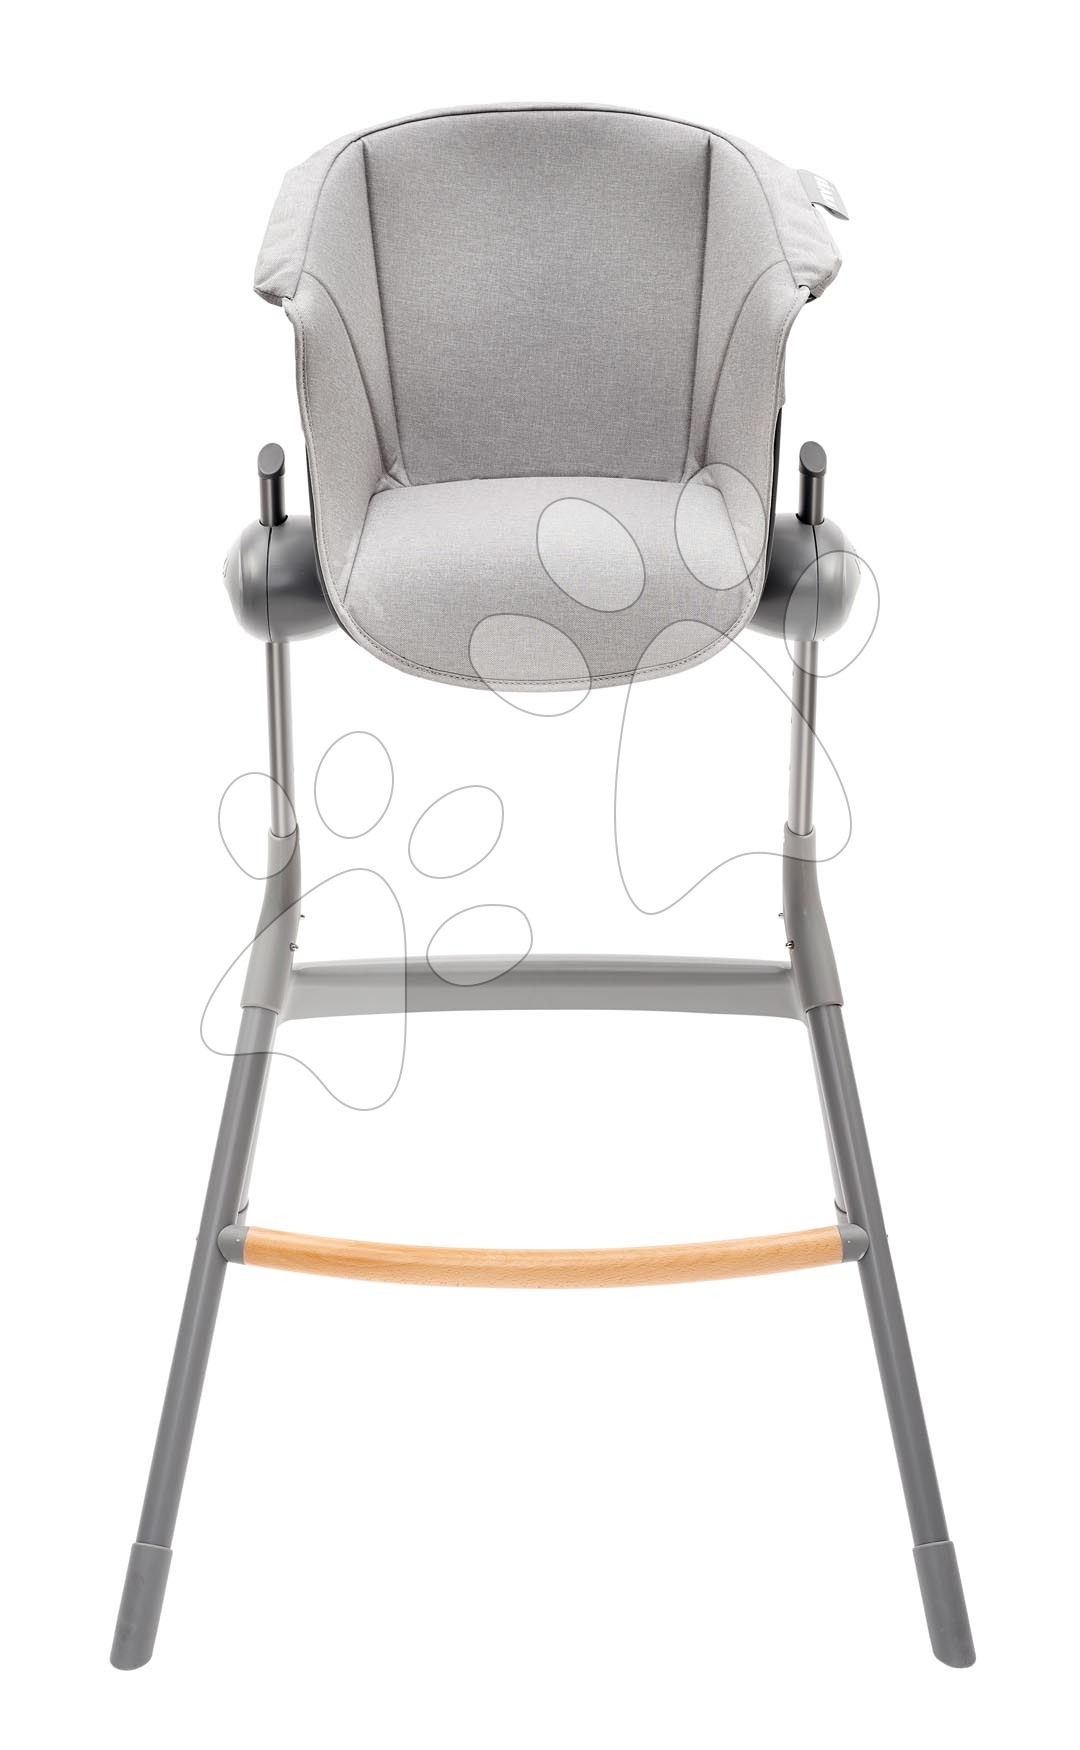 E-shop Textilná vložka Junior Up & Down High Chair Beaba k drevenej jedálenskej stoličke sivá od 36 mes